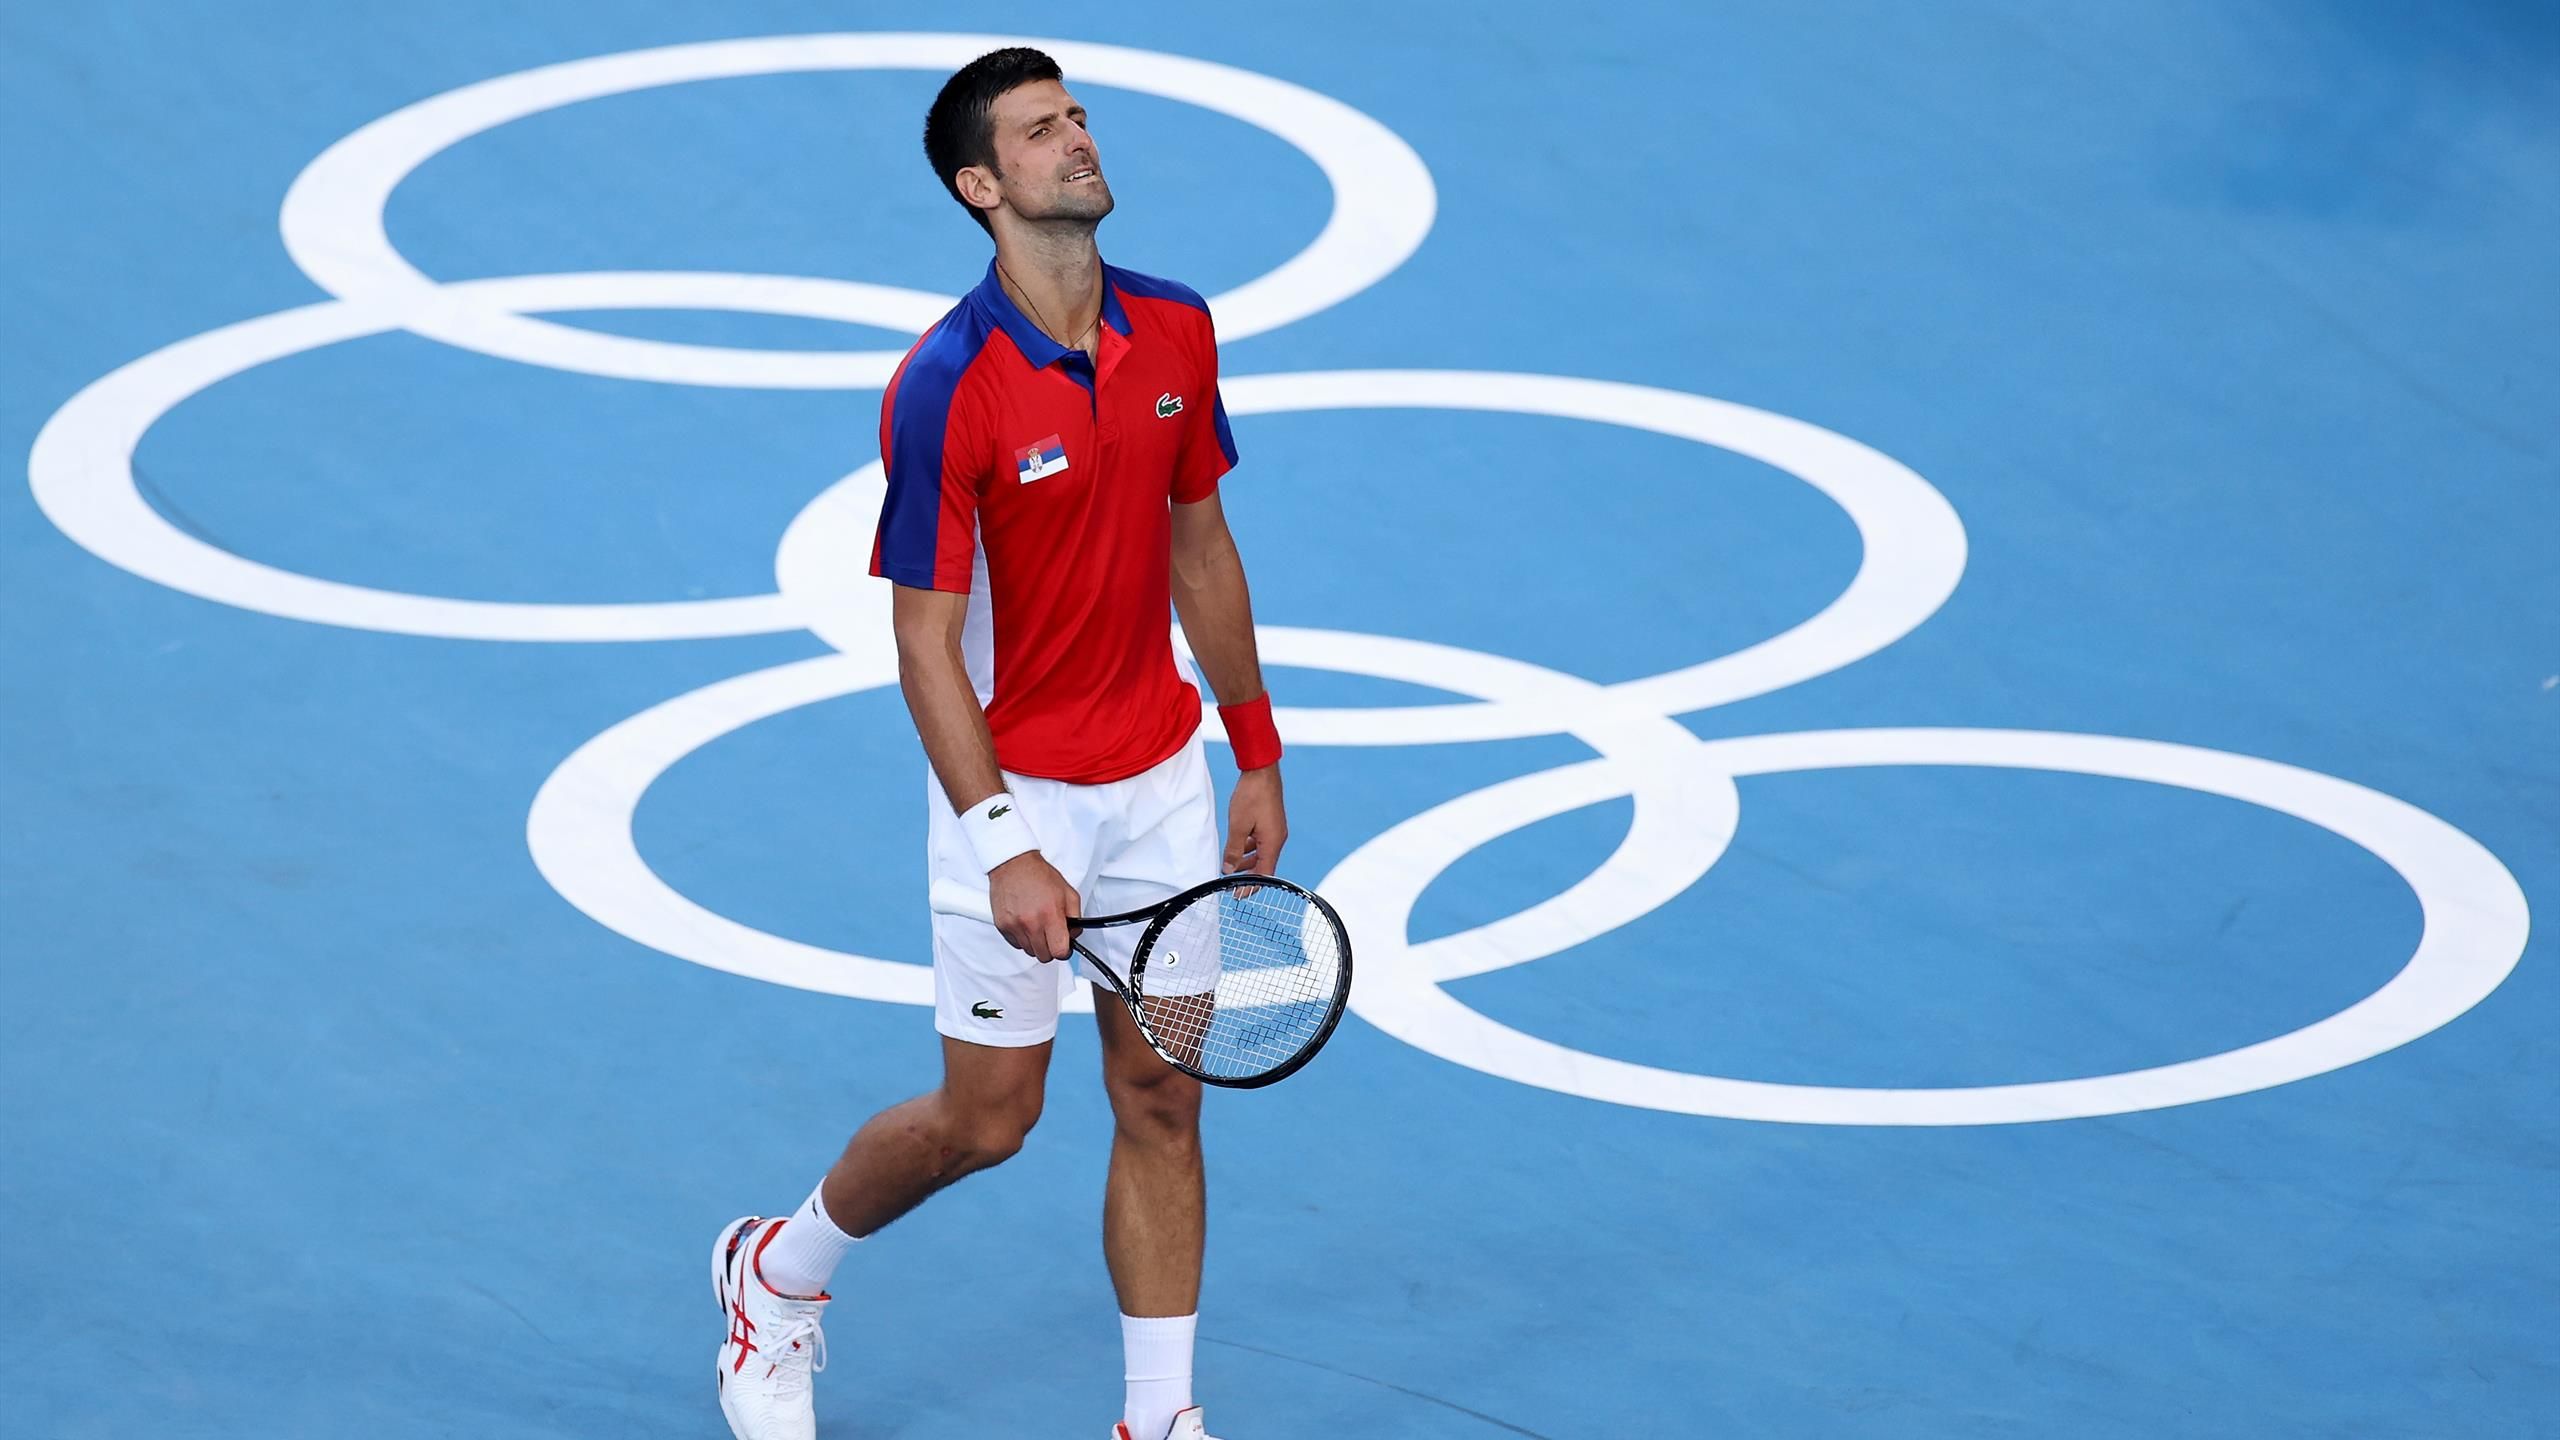 Novak Djokovic targeting gold medal at Paris 2024 Olympics and set to